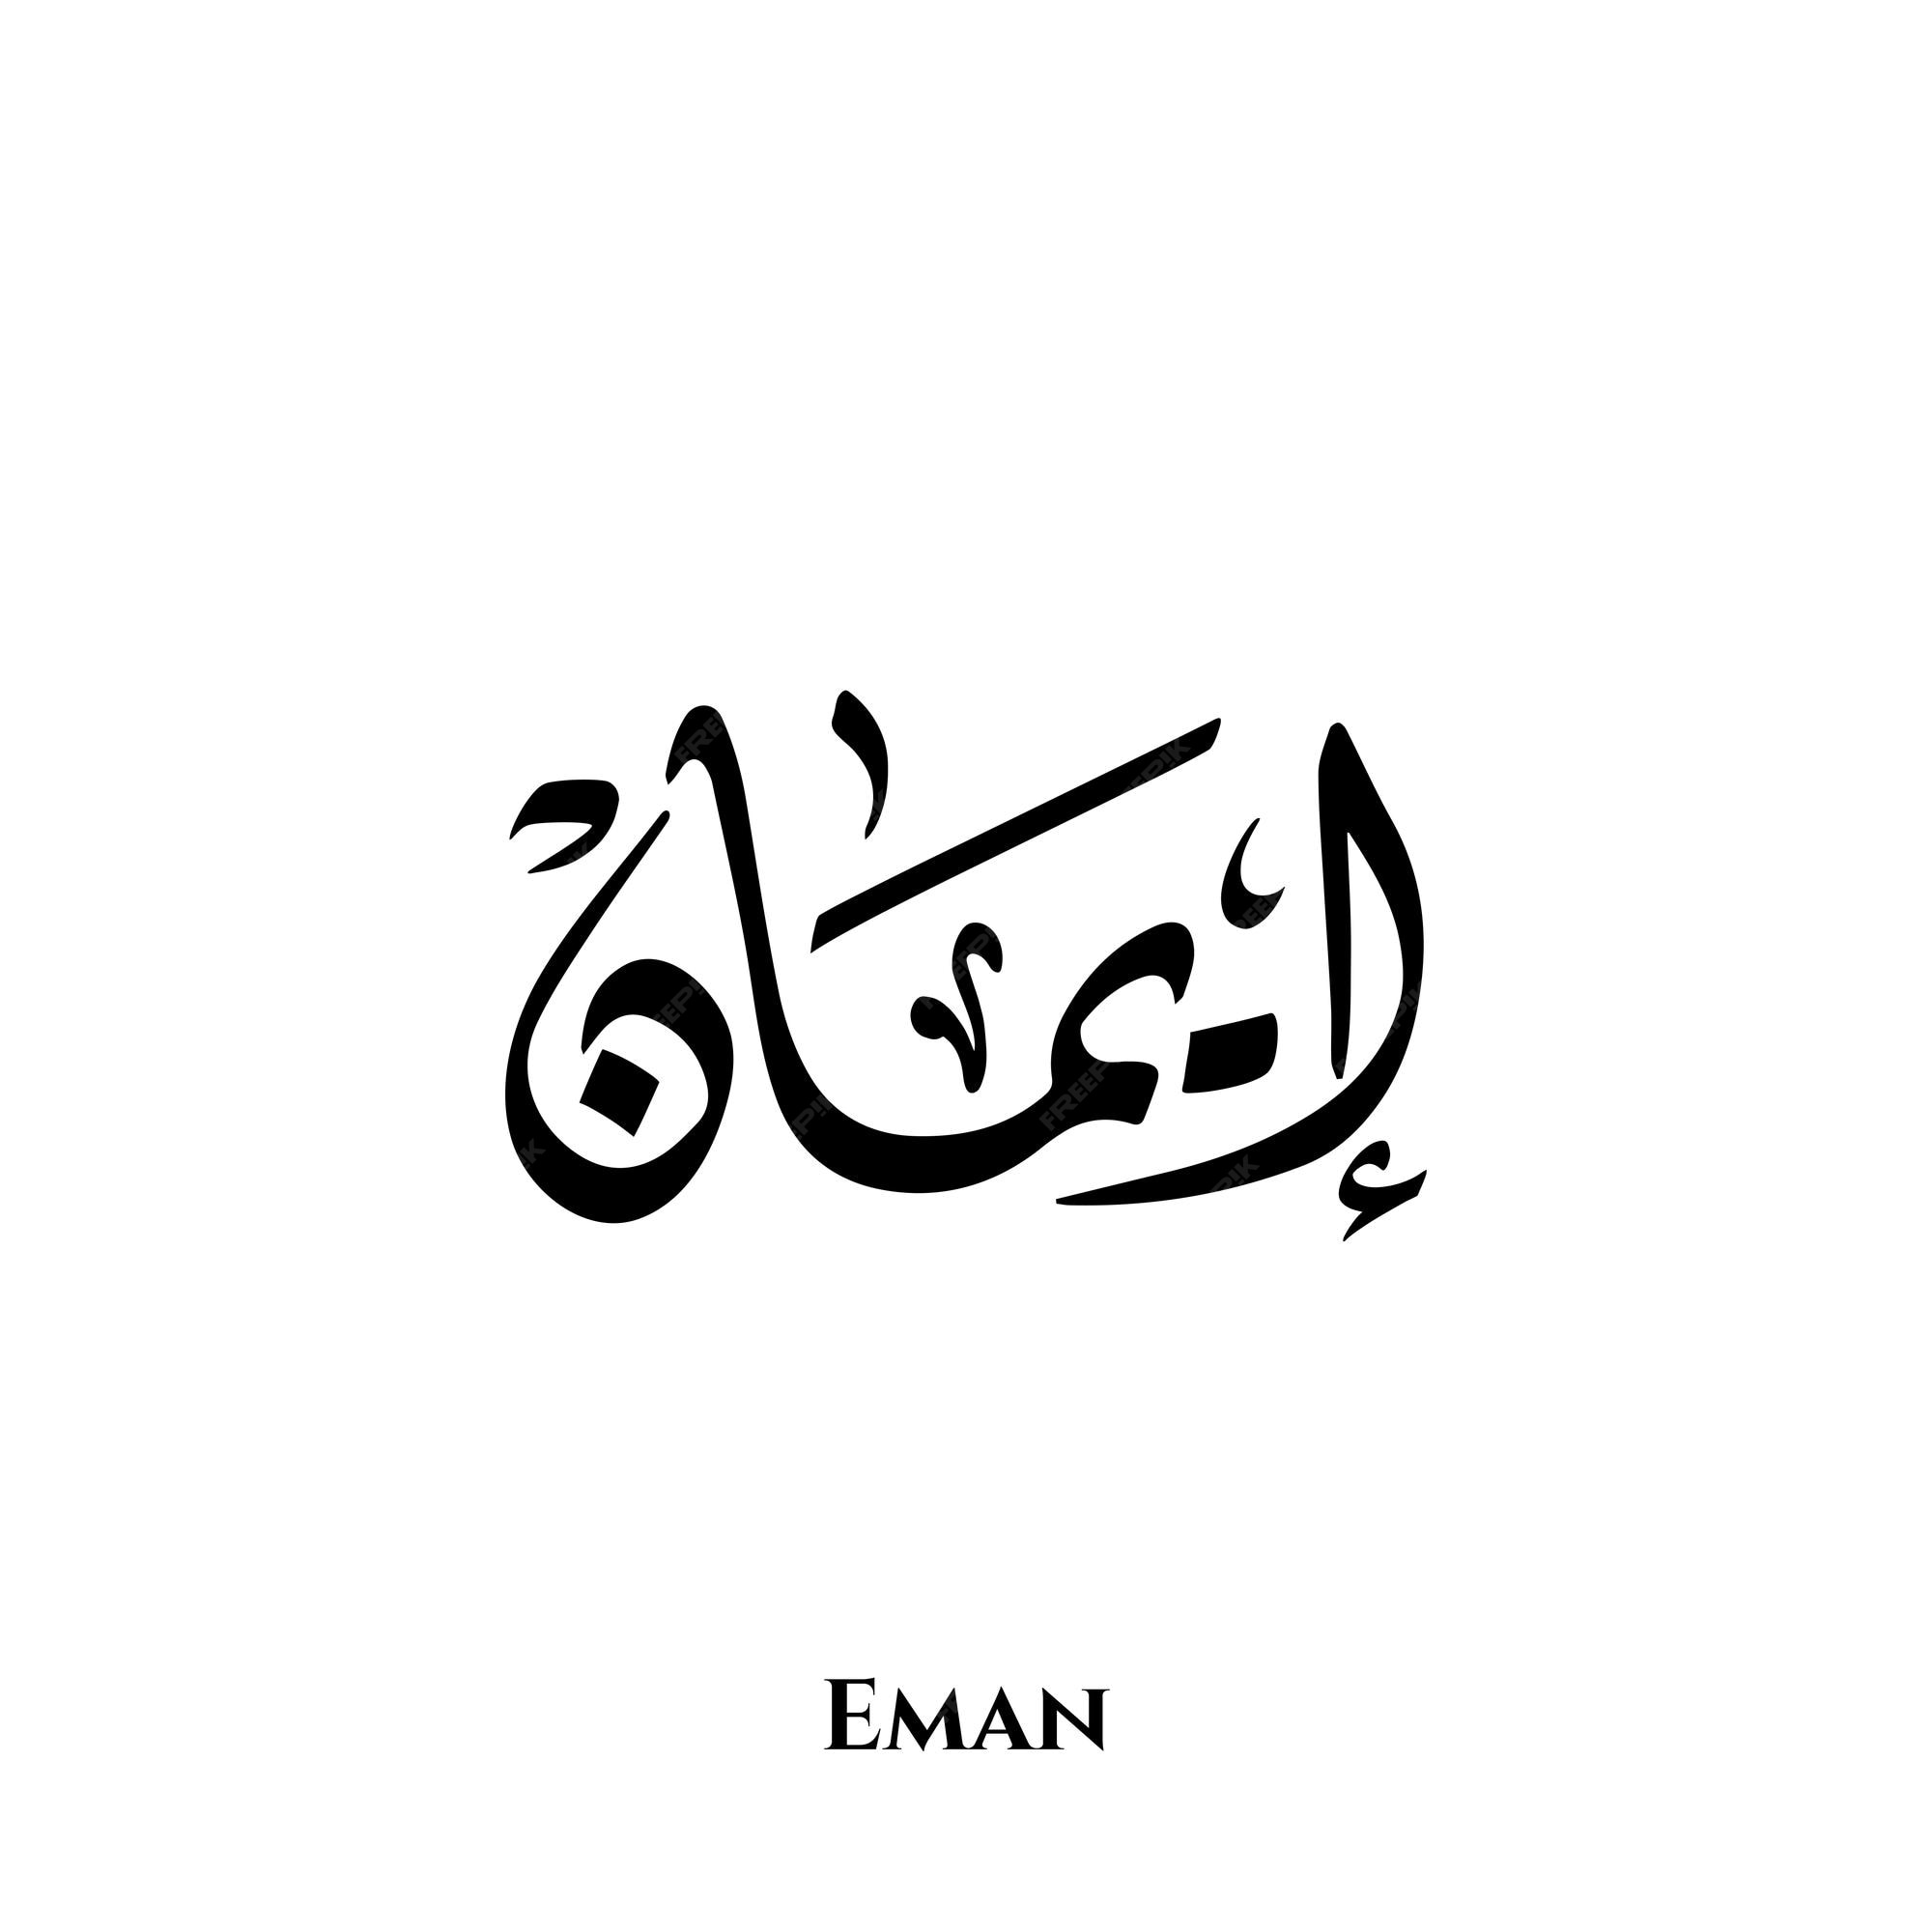 Eman Images - Free Download on Freepik